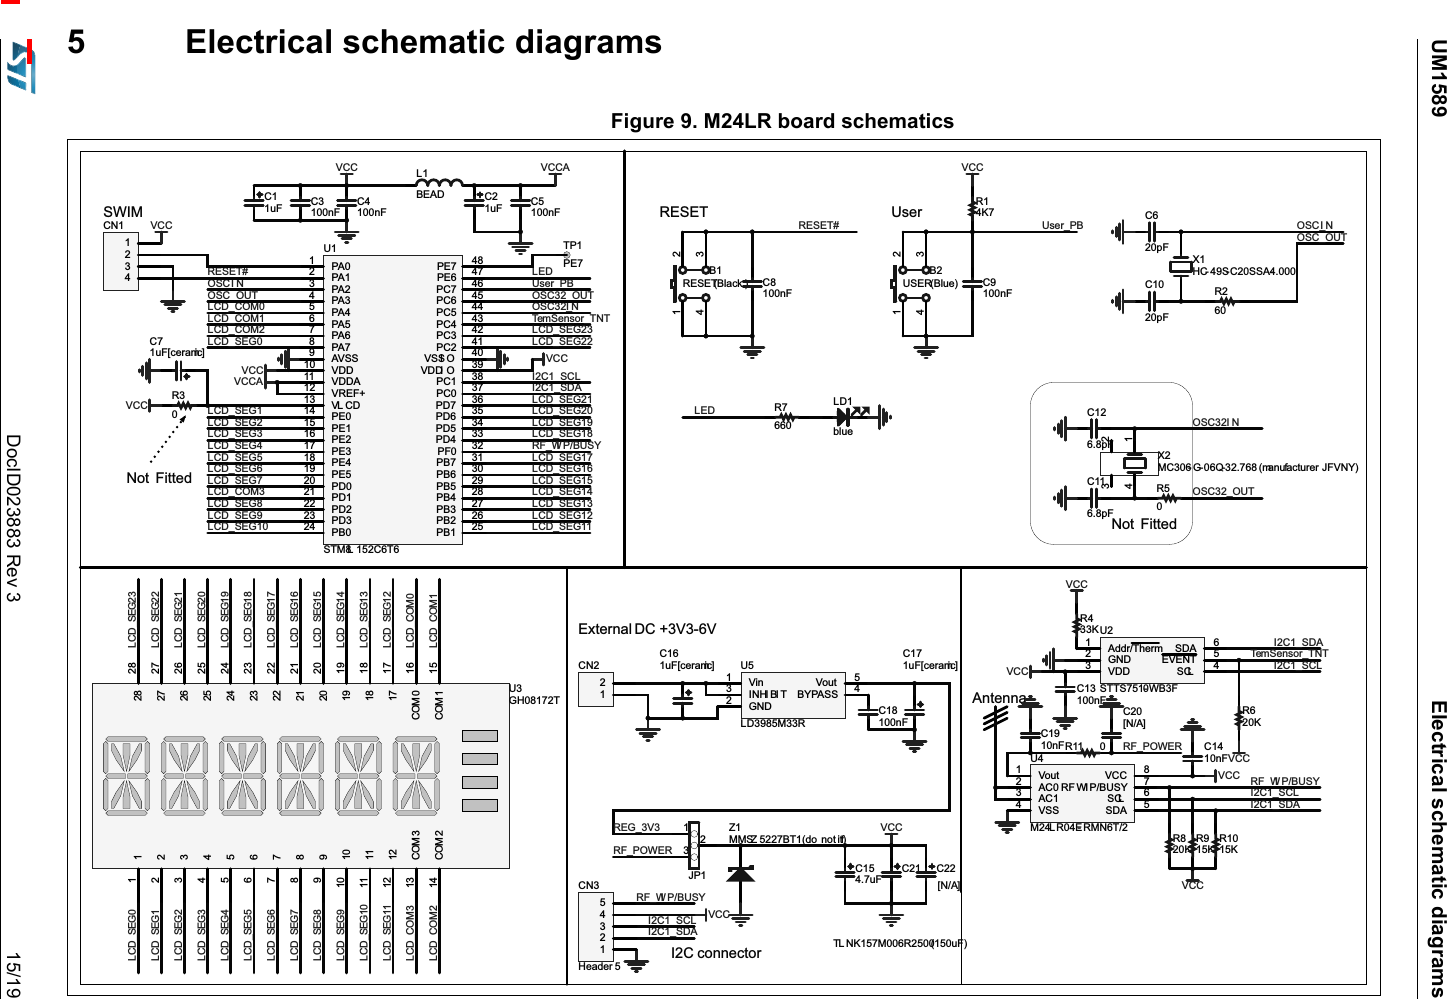 UM1589 Electrical schematic diagramsDocID023883 Rev 3 15/195 Electrical schematic diagramsFigure 9. M24LR board schematics/&apos;EOXH5 %5(6(7 %ODFN  &amp;Q)5(6(7&amp;S)&amp;S);+&amp; 6&amp;66$5  ;0&amp; *4PDQXIDFWXUHU -)91&lt;&amp;S)&amp;S)&amp;Q)9&amp;&amp;&amp;Q)/%($&apos; &amp;X) &amp;Q)9&amp;&amp;$&amp;X)/(&apos; %86(5 %OXH &amp;Q)55(6(75.9&amp;&amp;8VHUB3%&amp;20&amp;20 &amp;20 &amp;20          8*+7$GGU7KHUP*1&apos;9&apos;&apos;6&amp;/ (9(17 6&apos;$ 86776:%)&amp;16:,0&amp;1([WHUQDO &apos;&amp; 99-3=006= %7 GR QRW ILW/&amp;&apos;B&amp;20/&amp;&apos;B&amp;20 /&amp;&apos;B&amp;20 /&amp;&apos;B&amp;20/&amp;&apos;B6(*/&amp;&apos;B6(*/&amp;&apos;B6(*/&amp;&apos;B6(*/&amp;&apos;B6(*/&amp;&apos;B6(*/&amp;&apos;B6(*/&amp;&apos;B6(*/&amp;&apos;B6(*/&amp;&apos;B6(*/&amp;&apos;B6(*/&amp;&apos;B6(* /&amp;&apos;B6(*/&amp;&apos;B6(*/&amp;&apos;B6(*/&amp;&apos;B6(*/&amp;&apos;B6(*/&amp;&apos;B6(*/&amp;&apos;B6(*/&amp;&apos;B6(*/&amp;&apos;B6(*/&amp;&apos;B6(*/&amp;&apos;B6(*/&amp;&apos;B6(*26&amp;B,126&amp;B28726&amp;B,126&amp;B2878VHU9&amp;&amp;&amp;Q)5.5.5.9&amp;&amp;,&amp;B6&apos;$,&amp;B6&amp;/5)B:, 3%86&lt;5)B32:(5$QWHQQD5)B32:(59&amp;&amp;&amp;X)9&amp;&amp;9&amp;&amp;$9&amp;&amp;/(&apos;3$3$3$3$3$3$3$3$$9669&apos;&apos;9&apos;&apos;$95()9/ &amp;&apos;3(3(3(3(3(3(3&apos;3&apos;3&apos;3&apos;3% 3% 3% 3% 3% 3% 3% 3% 3) 3&apos; 3&apos; 3&apos; 3&apos; 3&amp; 3&amp; 9&apos;&apos;, 2 966,2 3&amp; 3&amp; 3&amp; 3&amp; 3&amp; 3&amp; 3( 3( 8670/ &amp;759&amp;&amp;1RW )LWWHG/&amp;&apos;B&amp;20/&amp;&apos;B&amp;20/&amp;&apos;B&amp;20/&amp;&apos;B6(*/&amp;&apos;B6(*/&amp;&apos;B6(*/&amp;&apos;B6(*/&amp;&apos;B6(*/&amp;&apos;B6(*/&amp;&apos;B6(*/&amp;&apos;B6(*/&amp;&apos;B6(*/&amp;&apos;B6(*/&amp;&apos;B6(* /&amp;&apos;B6(*/&amp;&apos;B6(*/&amp;&apos;B6(*/&amp;&apos;B6(*/&amp;&apos;B6(*/&amp;&apos;B6(*/&amp;&apos;B6(*/&amp;&apos;B6(*/&amp;&apos;B6(*/&amp;&apos;B6(*/&amp;&apos;B6(*/&amp;&apos;B6(*/&amp;&apos;B6(*/&amp;&apos;B&amp;20,&amp;B6&apos;$,&amp;B6&amp;/5)B:, 3%86&lt;7HP6HQVRUB71726&amp;B,126&amp;B2875(6(78VHUB3%26&amp;B,126&amp;B2875.9&amp;&amp;,&amp;B6&amp;/,&amp;B6&apos;$7HP6HQVRUB717&amp;Q)9&amp;&amp;5.9&amp;&amp;1RW )LWWHG9&amp;&amp;9LQ*1&apos;,1+, %, 7%&lt;3$66 9RXW 8/&apos;05&amp;X)&gt;FHUDPLF@&amp;Q)&amp;X)&gt;FHUDPLF@5(*B9&amp;X)&gt;FHUDPLF@733(9RXW$&amp;$&amp;9666&apos;$ 6&amp;/ 5) :, 3%86&lt; 9&amp;&amp; 80/5( 5017&amp;Q),&amp;B6&apos;$,&amp;B6&amp;/ 9&amp;&amp;,&amp; FRQQHFWRU5 &amp;&gt;1$@&amp;1+HDGHU5)B:, 3%86&lt;&amp;7/ 1.05 X)&amp;&gt;1$@